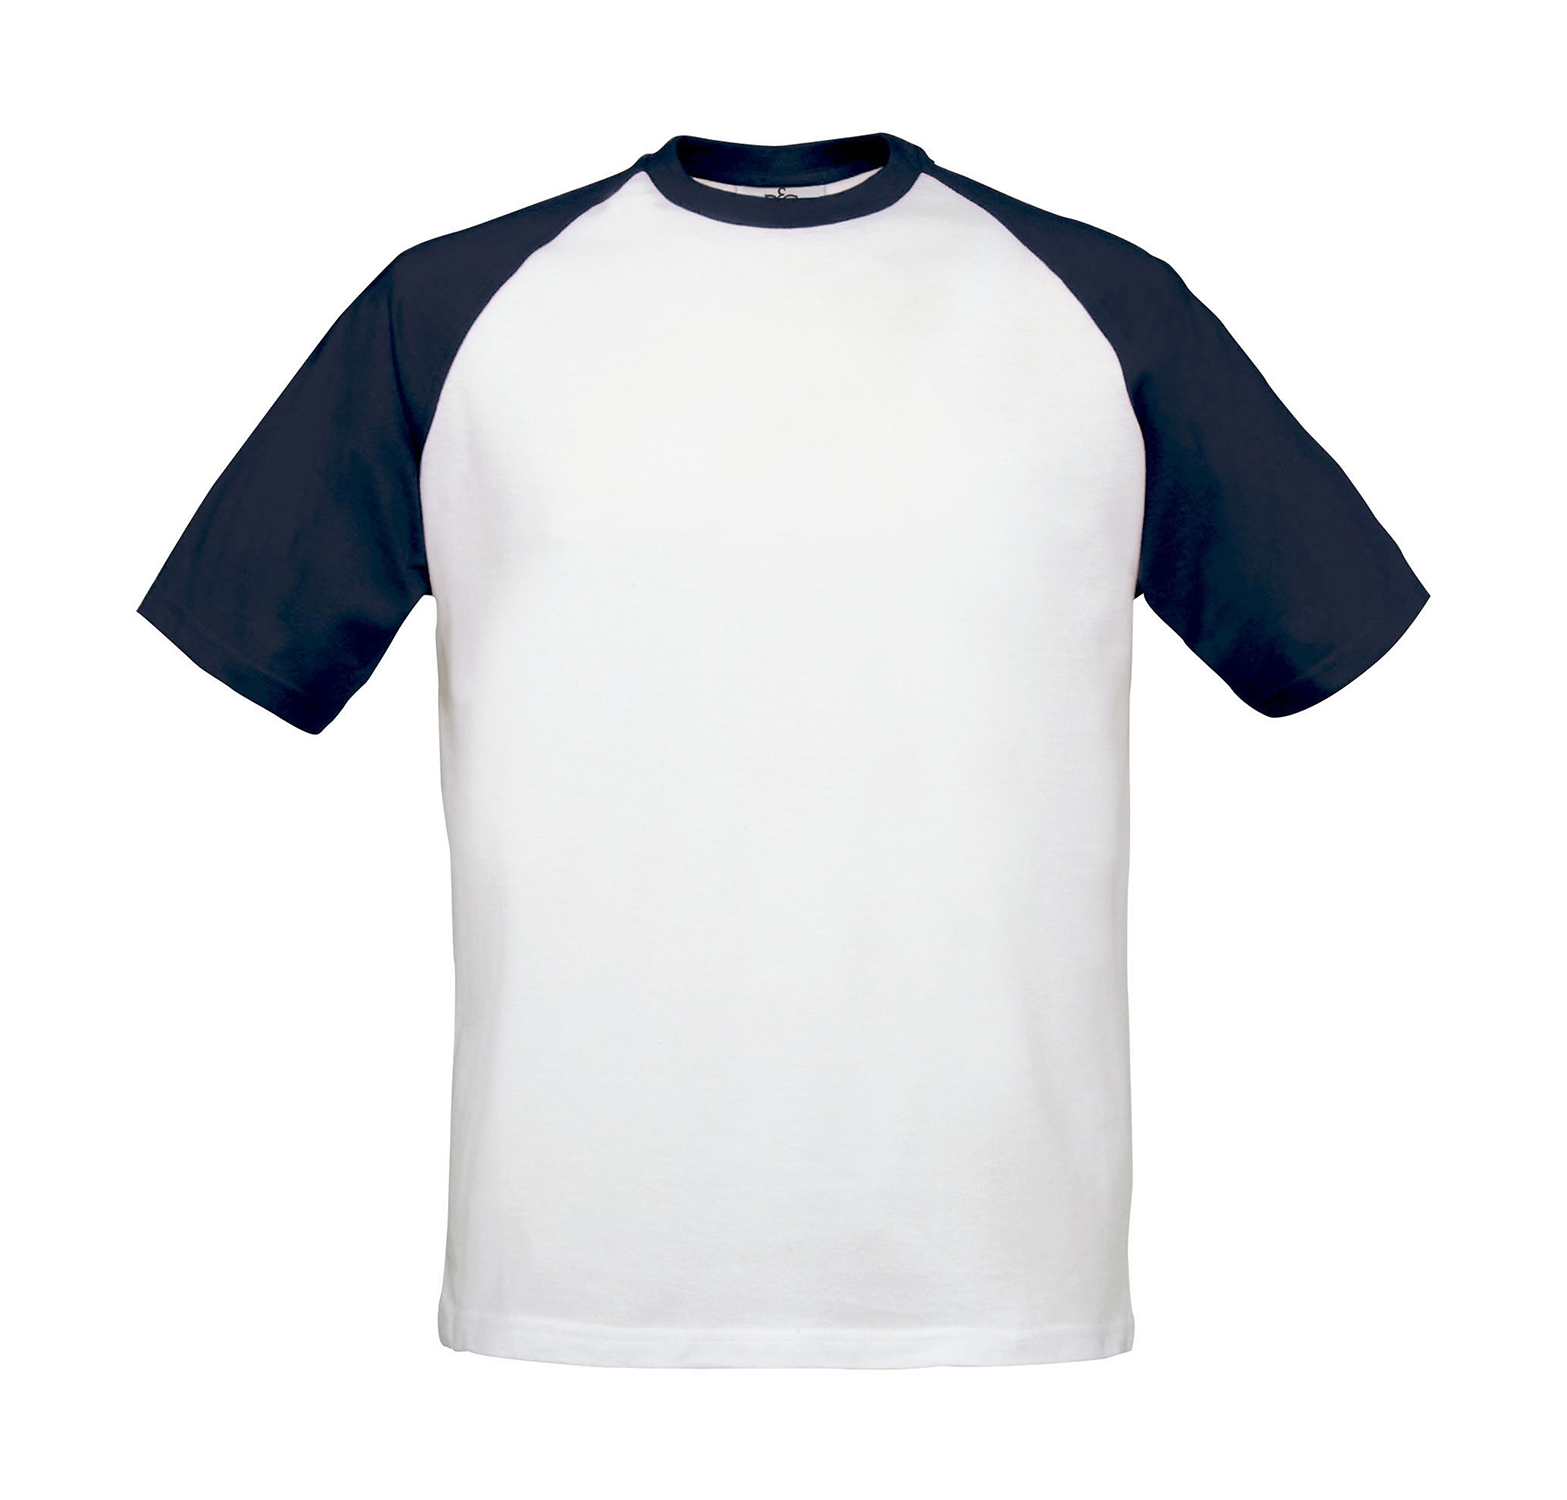 Pánské Baseball tričko Velikost: M, Barva: Modrá